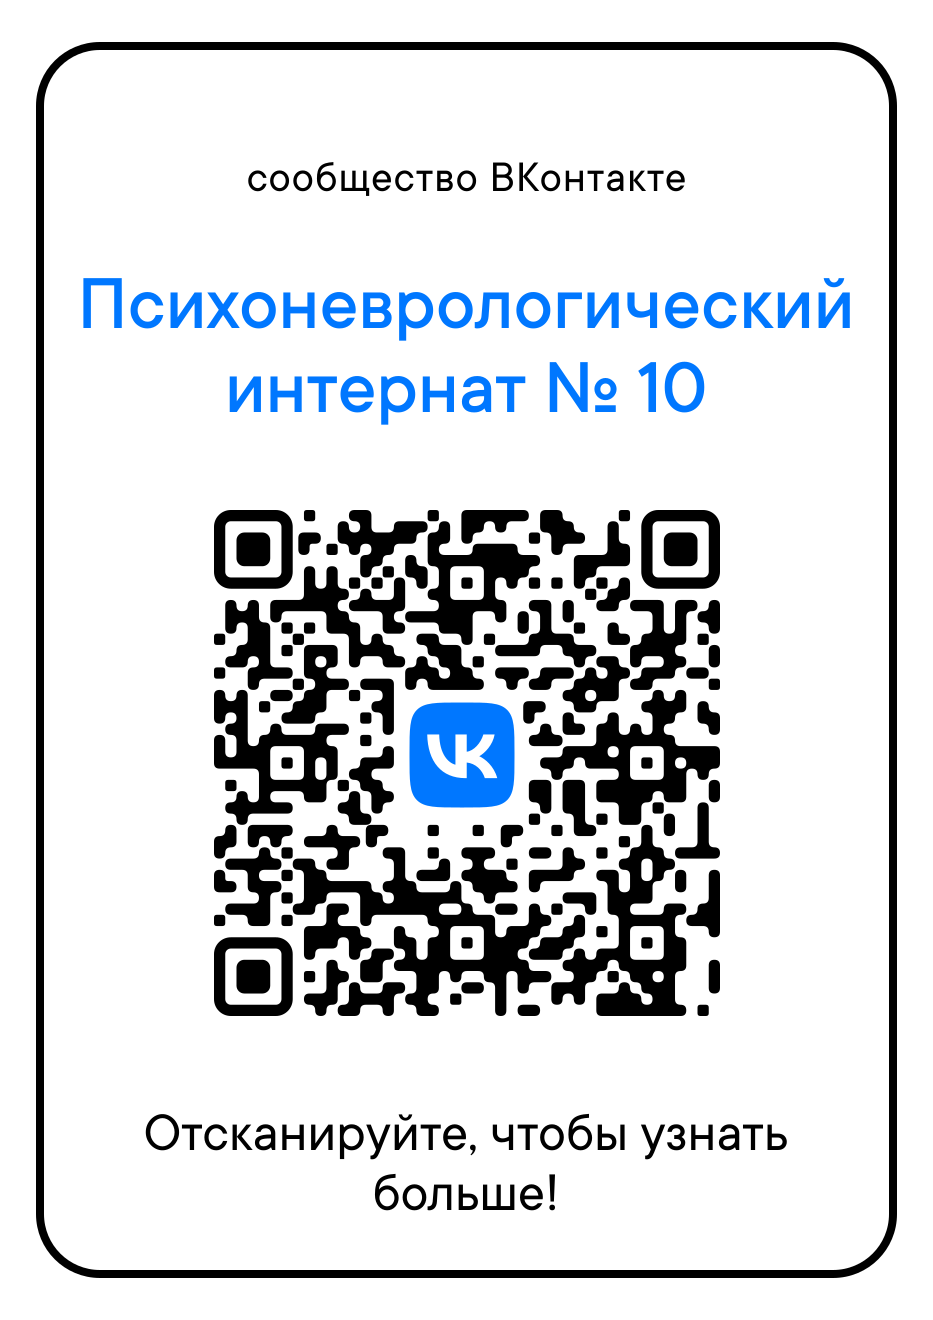 QR-код, содержащий ссылку на страницу ВКонтакте